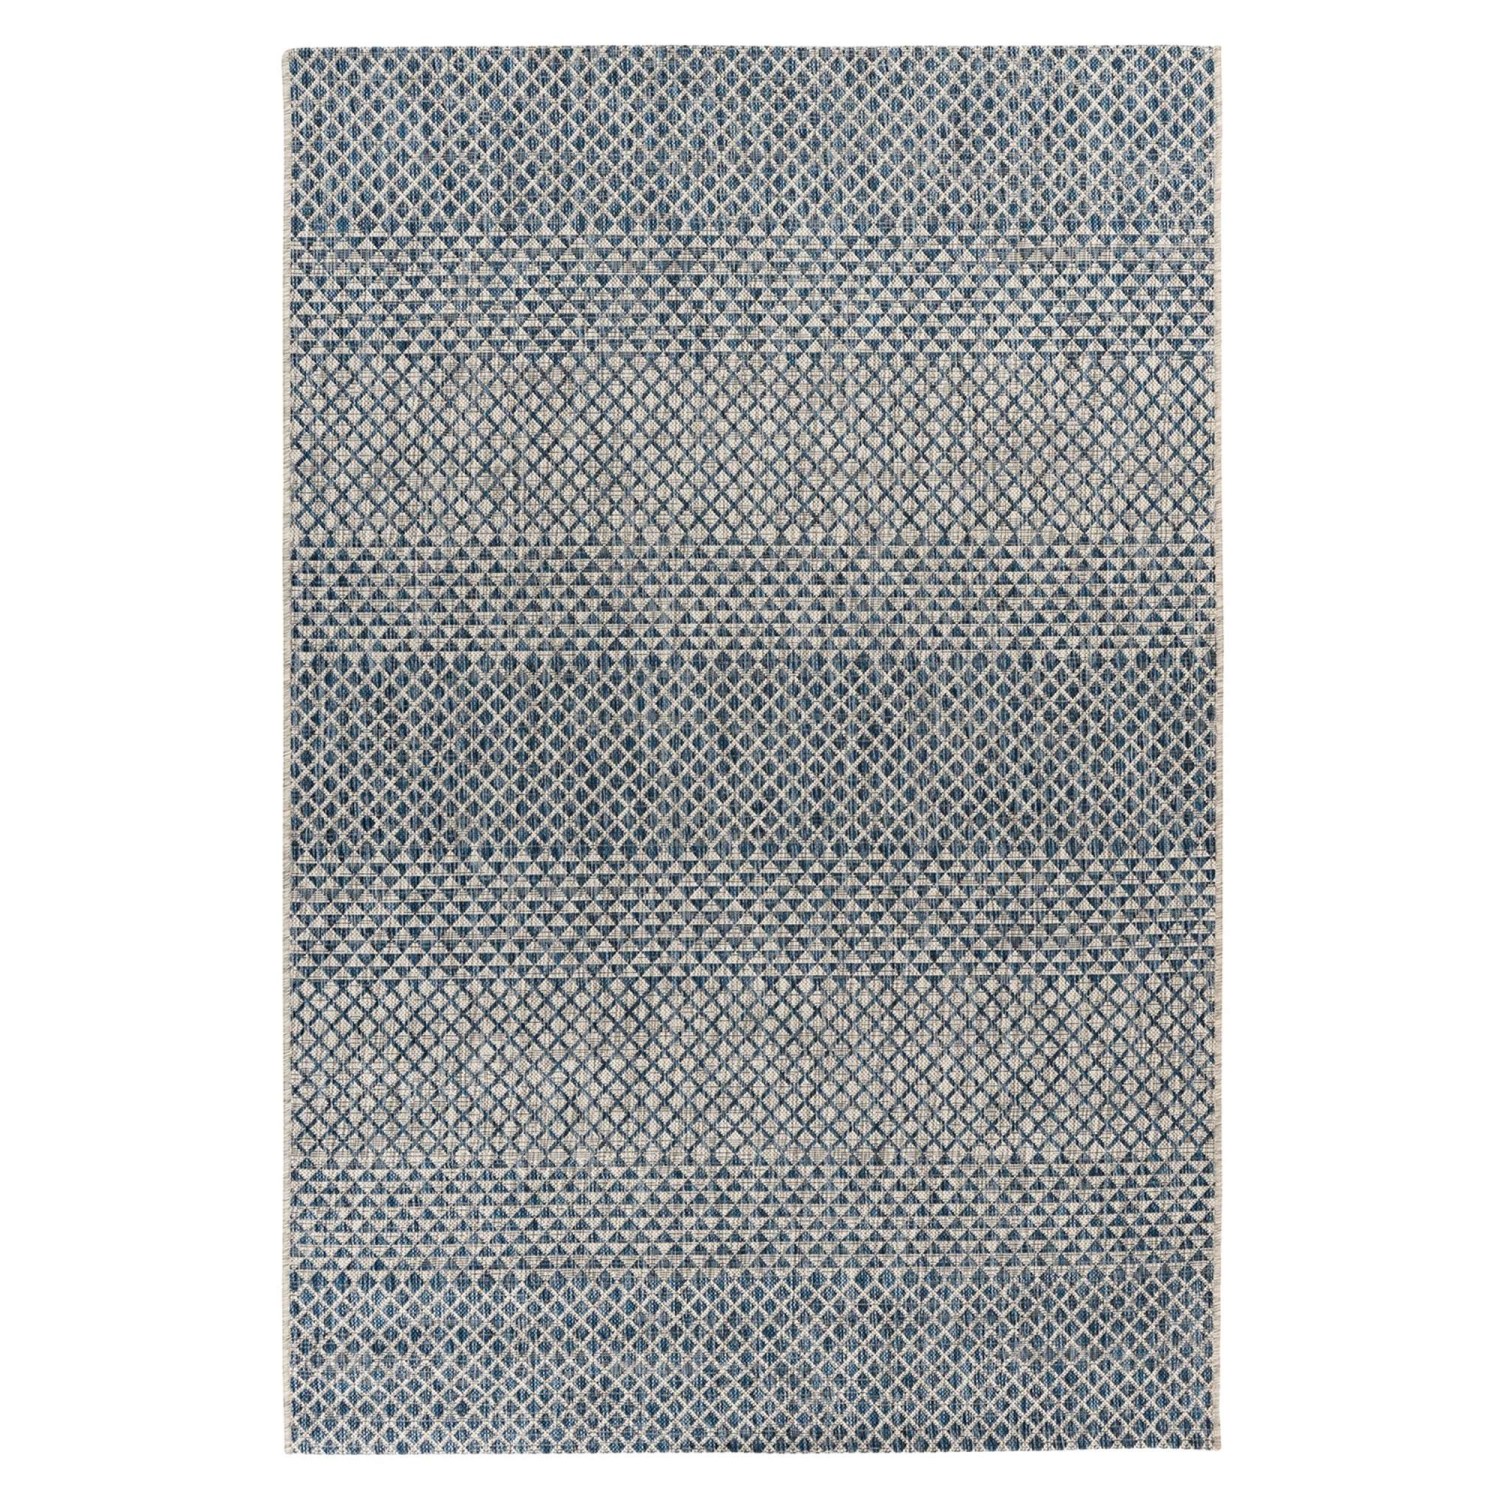 MeGusta Kurzflor Teppich Orientalisch Blau 160x230 cm Clara günstig online kaufen